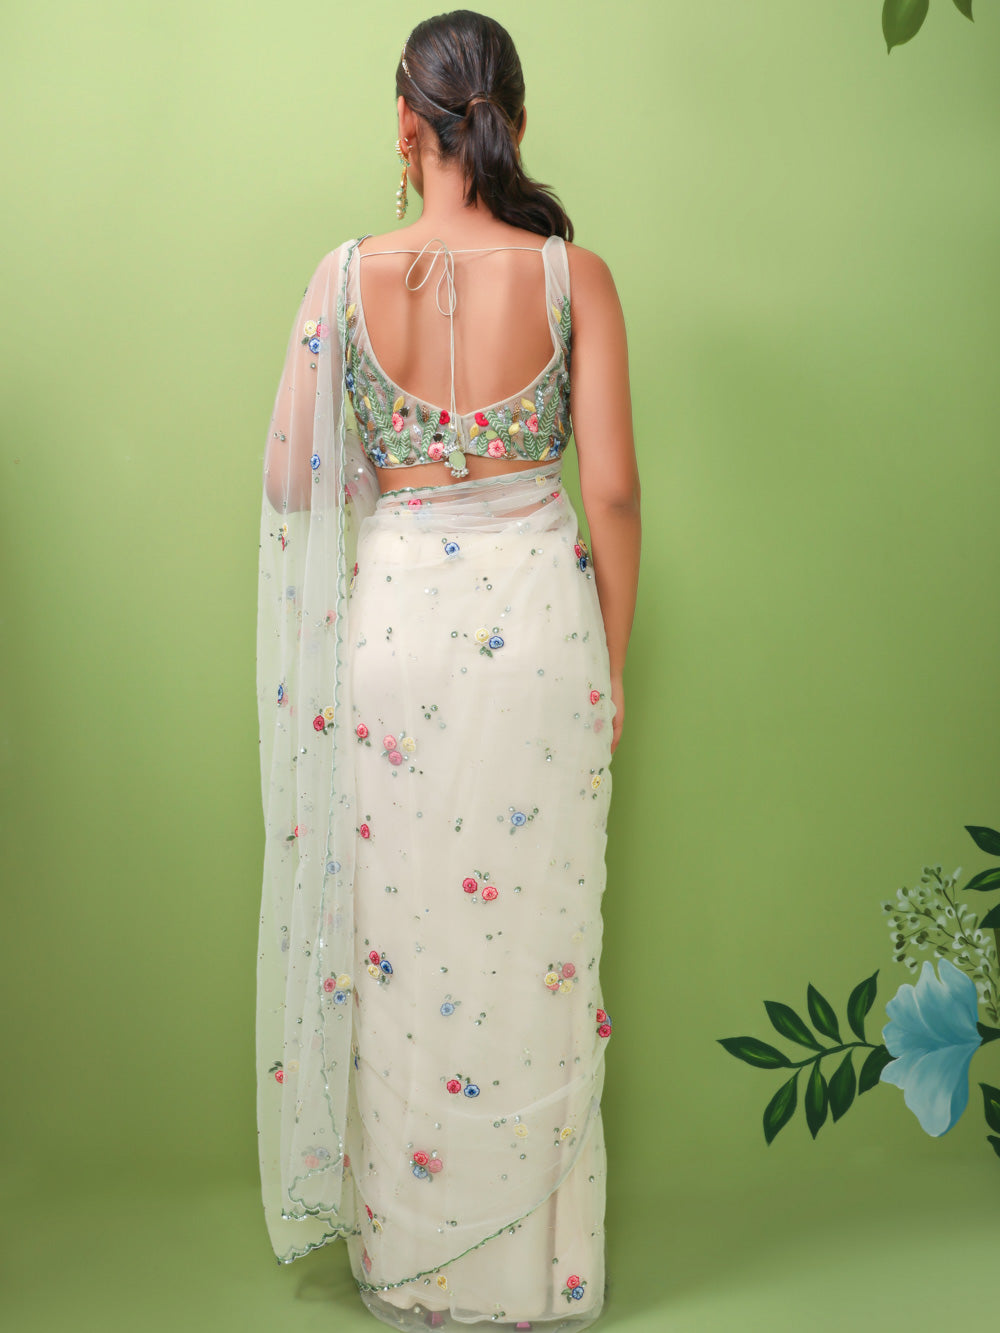 Flower Goddess saree